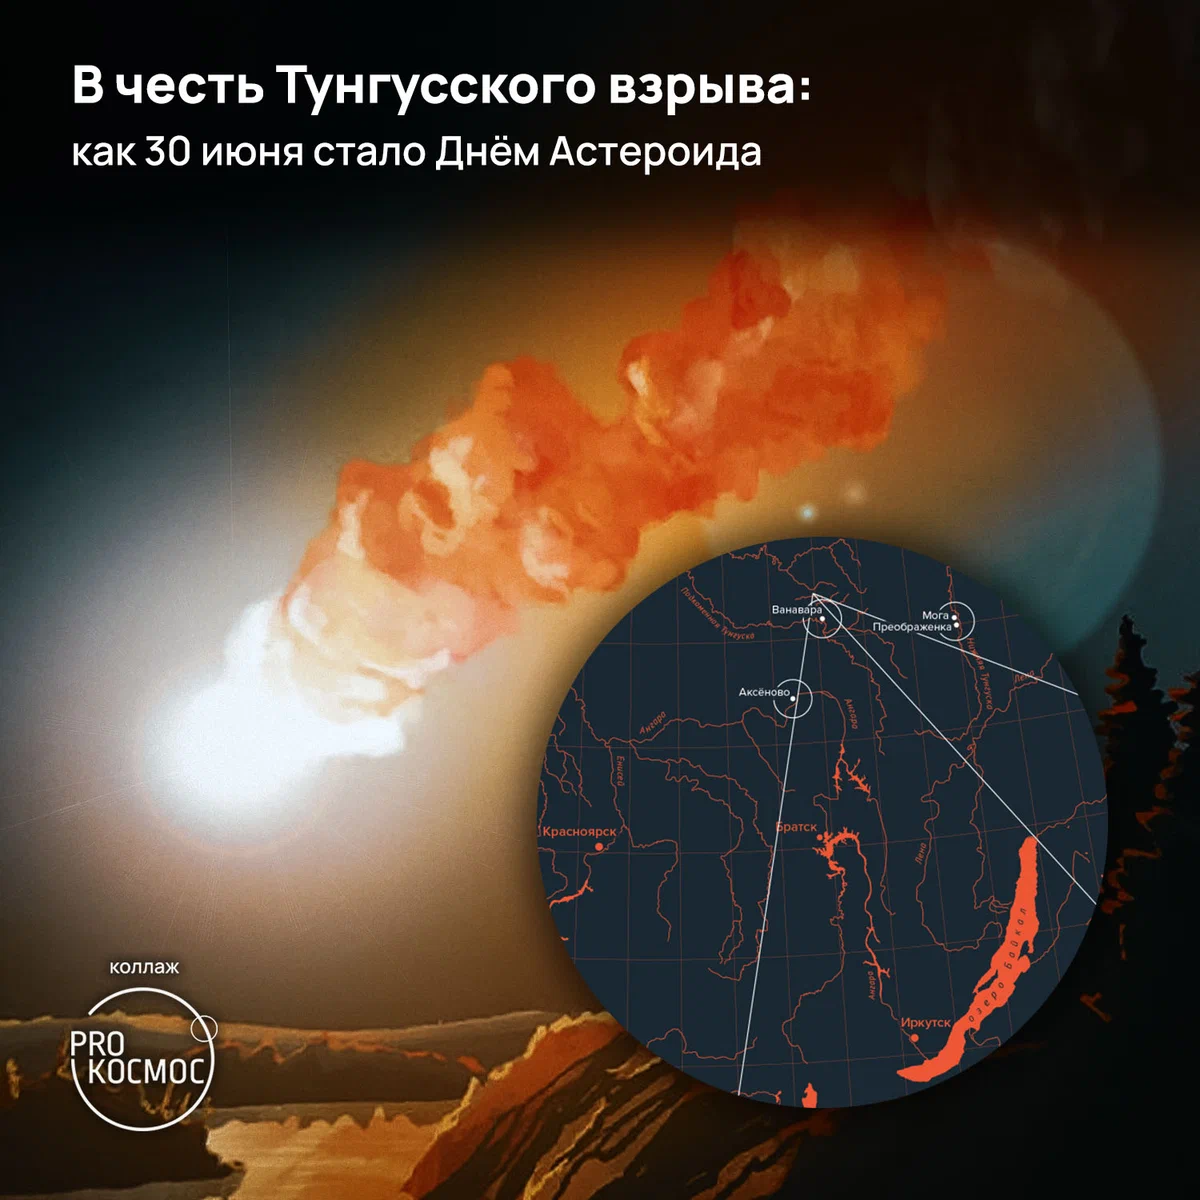 В честь Тунгусского взрыва: как 30 июня стало Днём Астероида height=1200px width=1200px